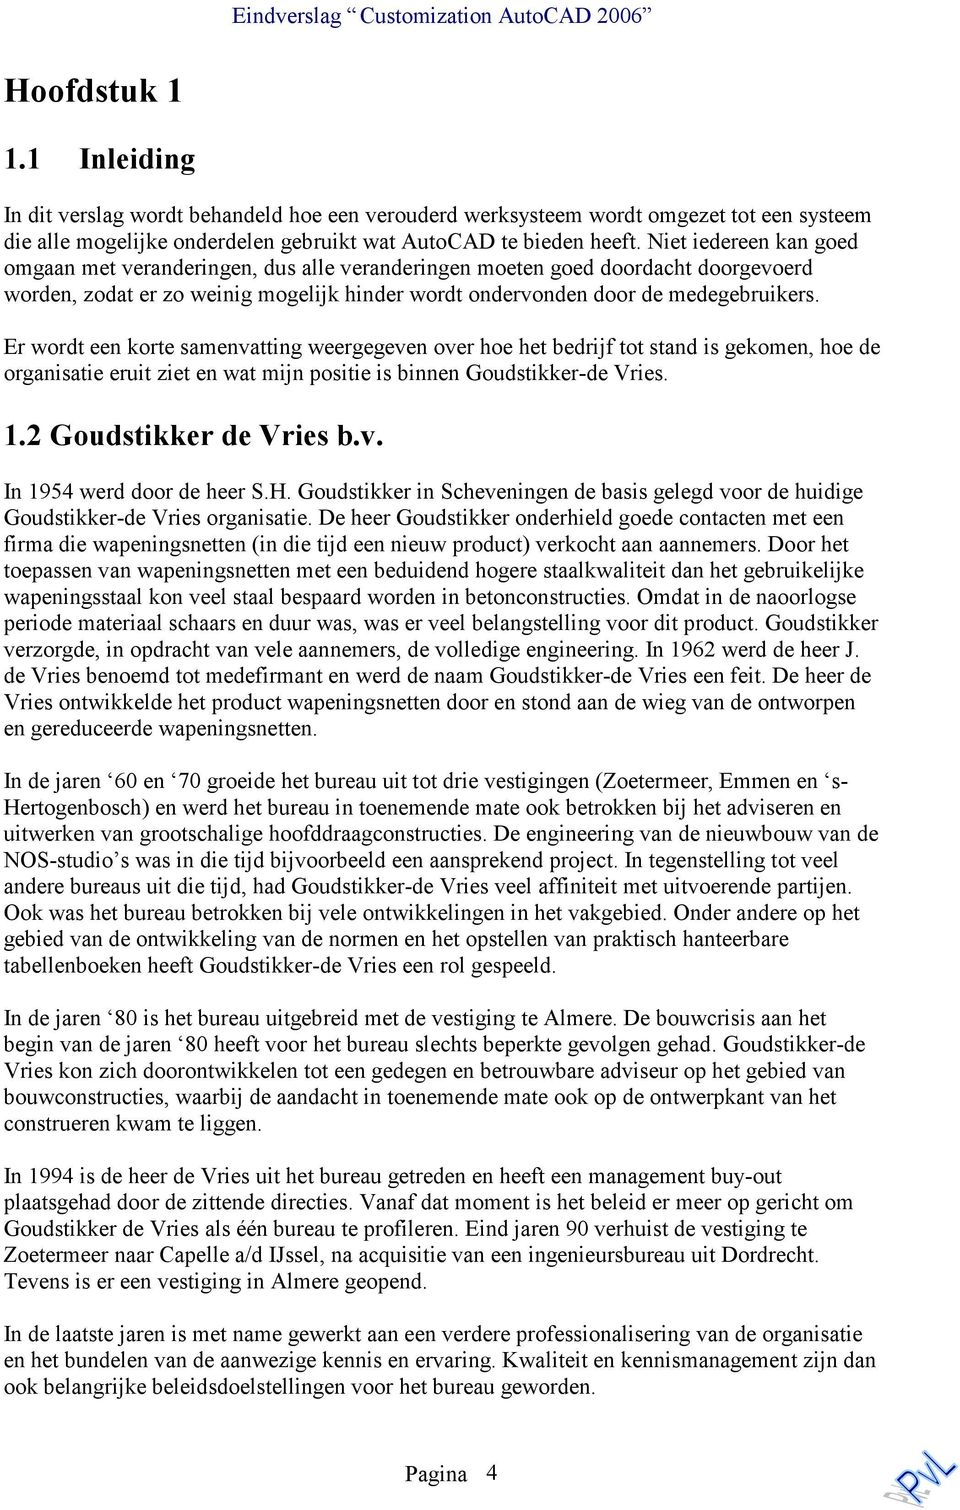 Er wordt een korte samenvatting weergegeven over hoe het bedrijf tot stand is gekomen, hoe de organisatie eruit ziet en wat mijn positie is binnen Goudstikker-de Vries. 1.2 Goudstikker de Vries b.v. In 1954 werd door de heer S.